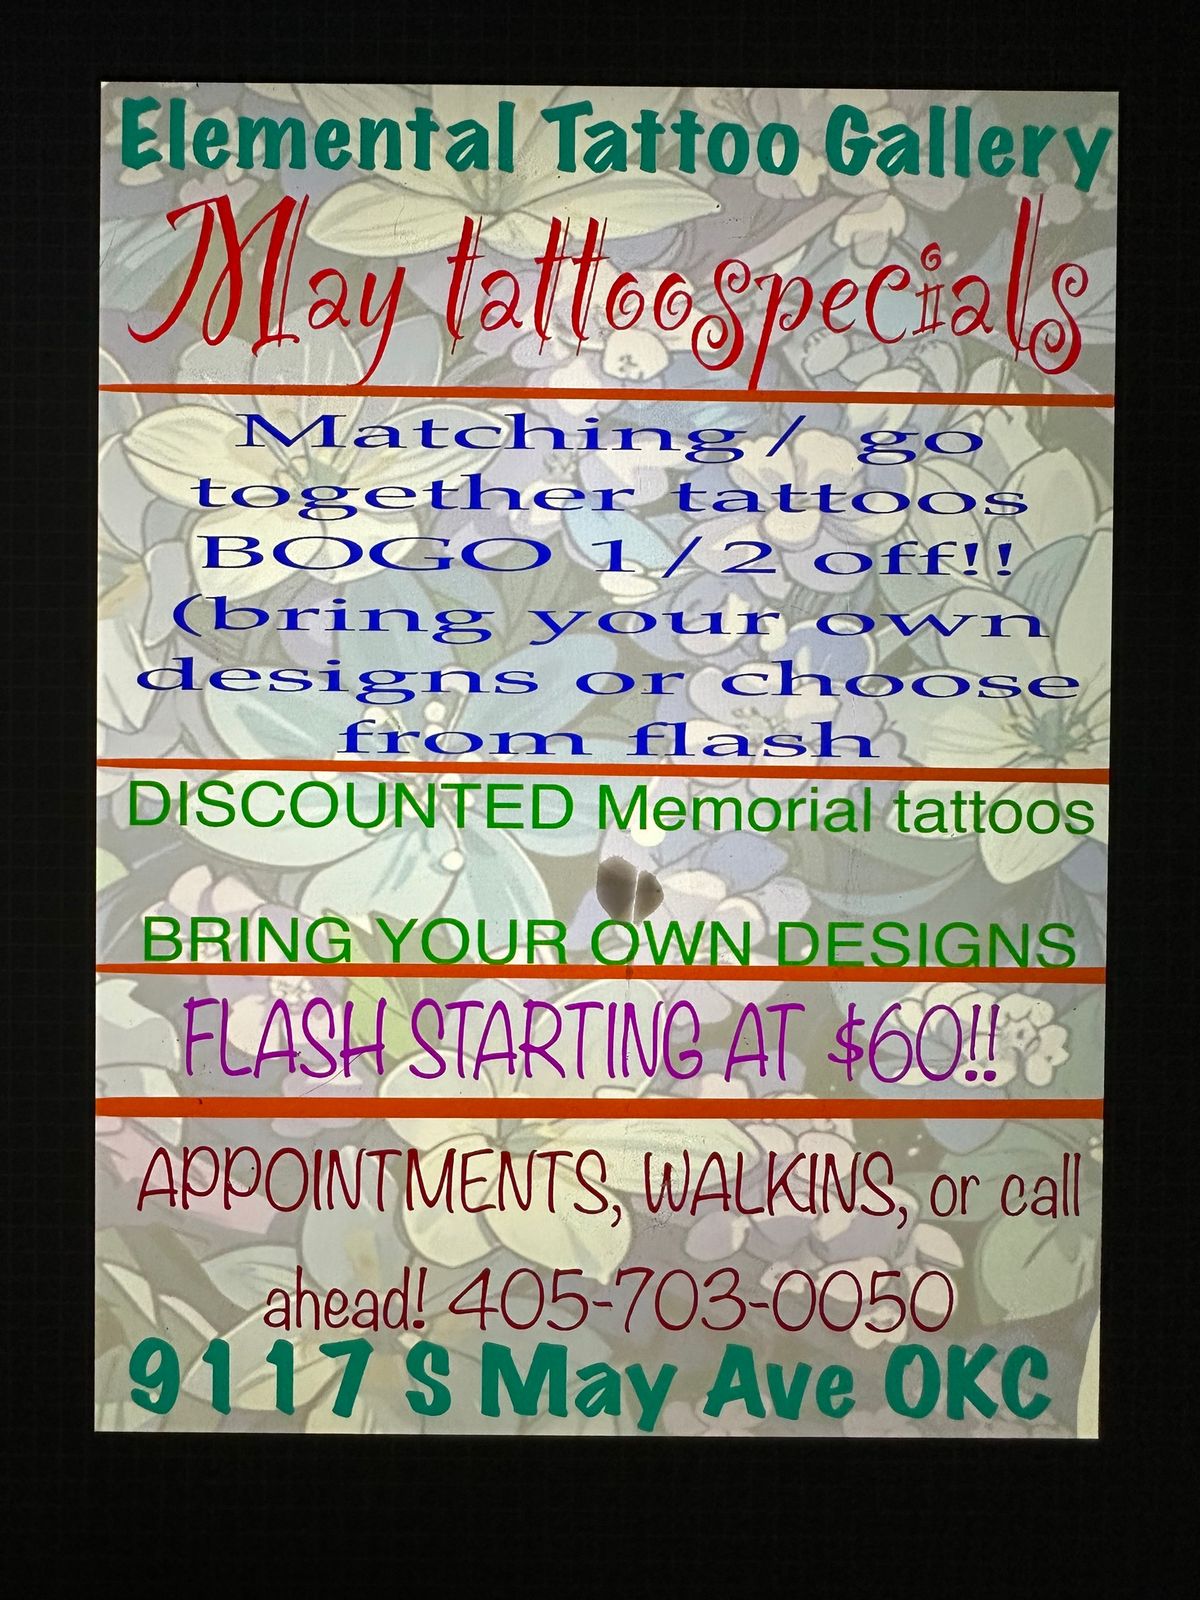 May tattoo specials ??